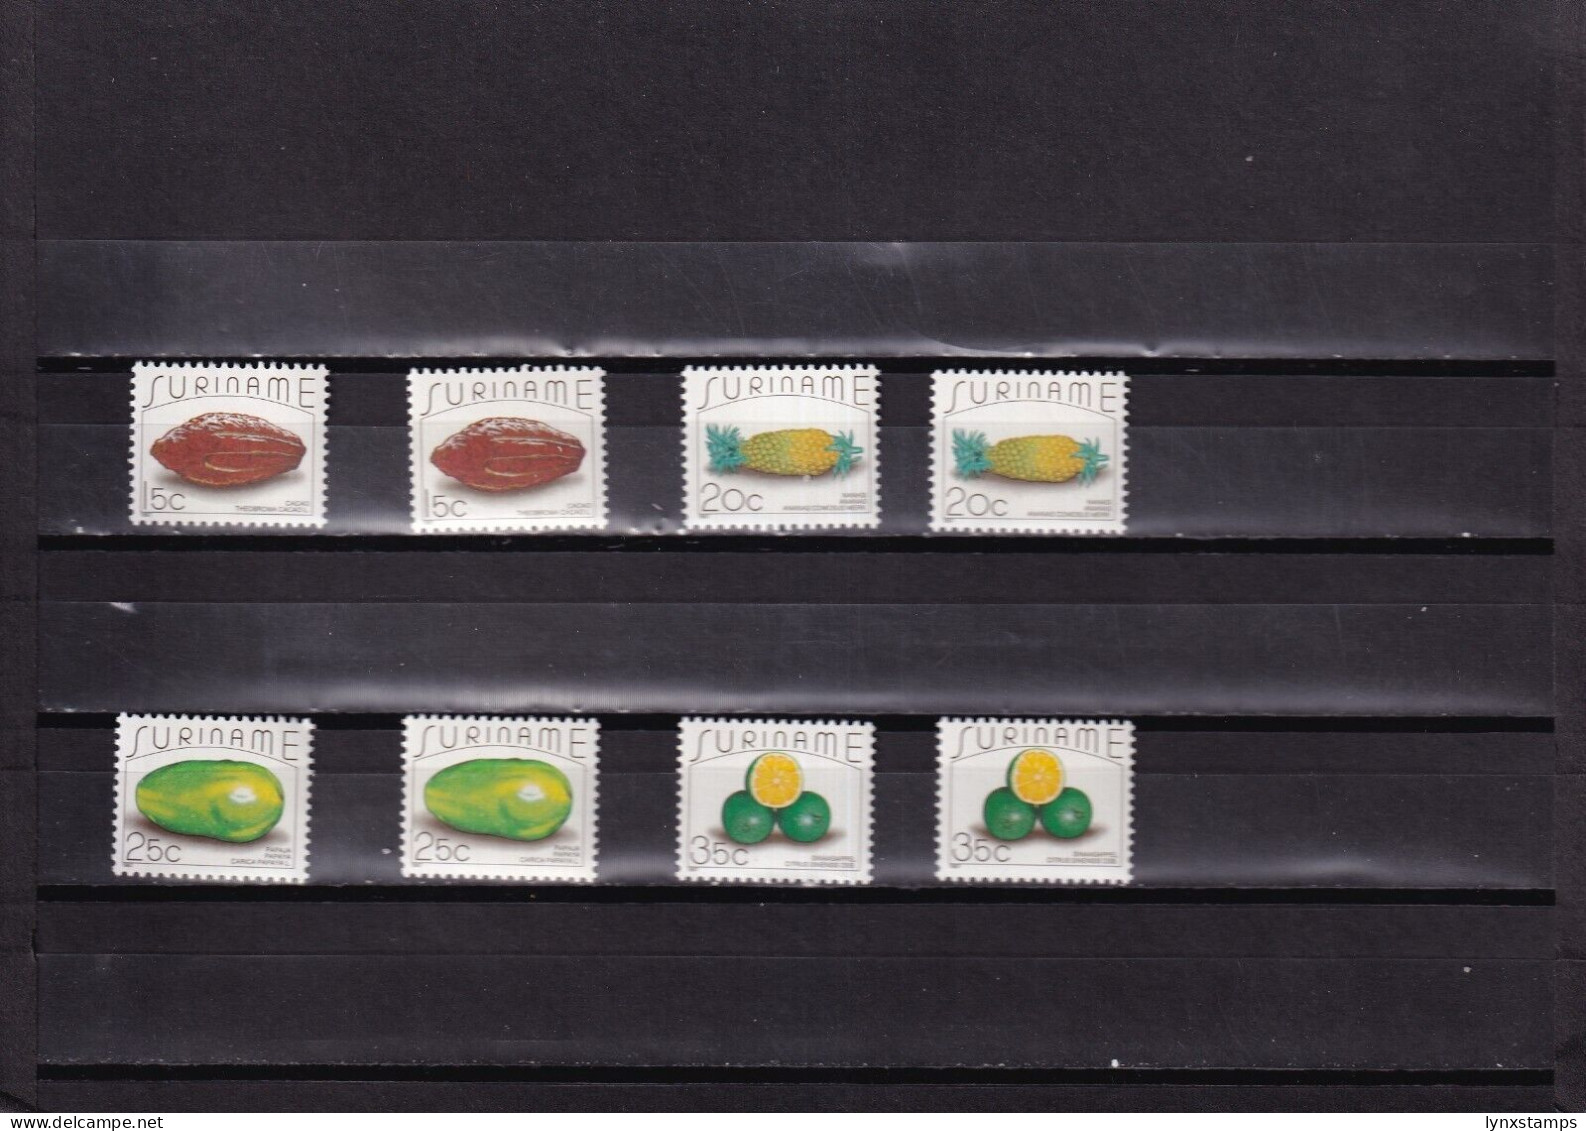 ER03 Suriname 1987 Postal Stamps Fruits MNH Stamps - Fruits